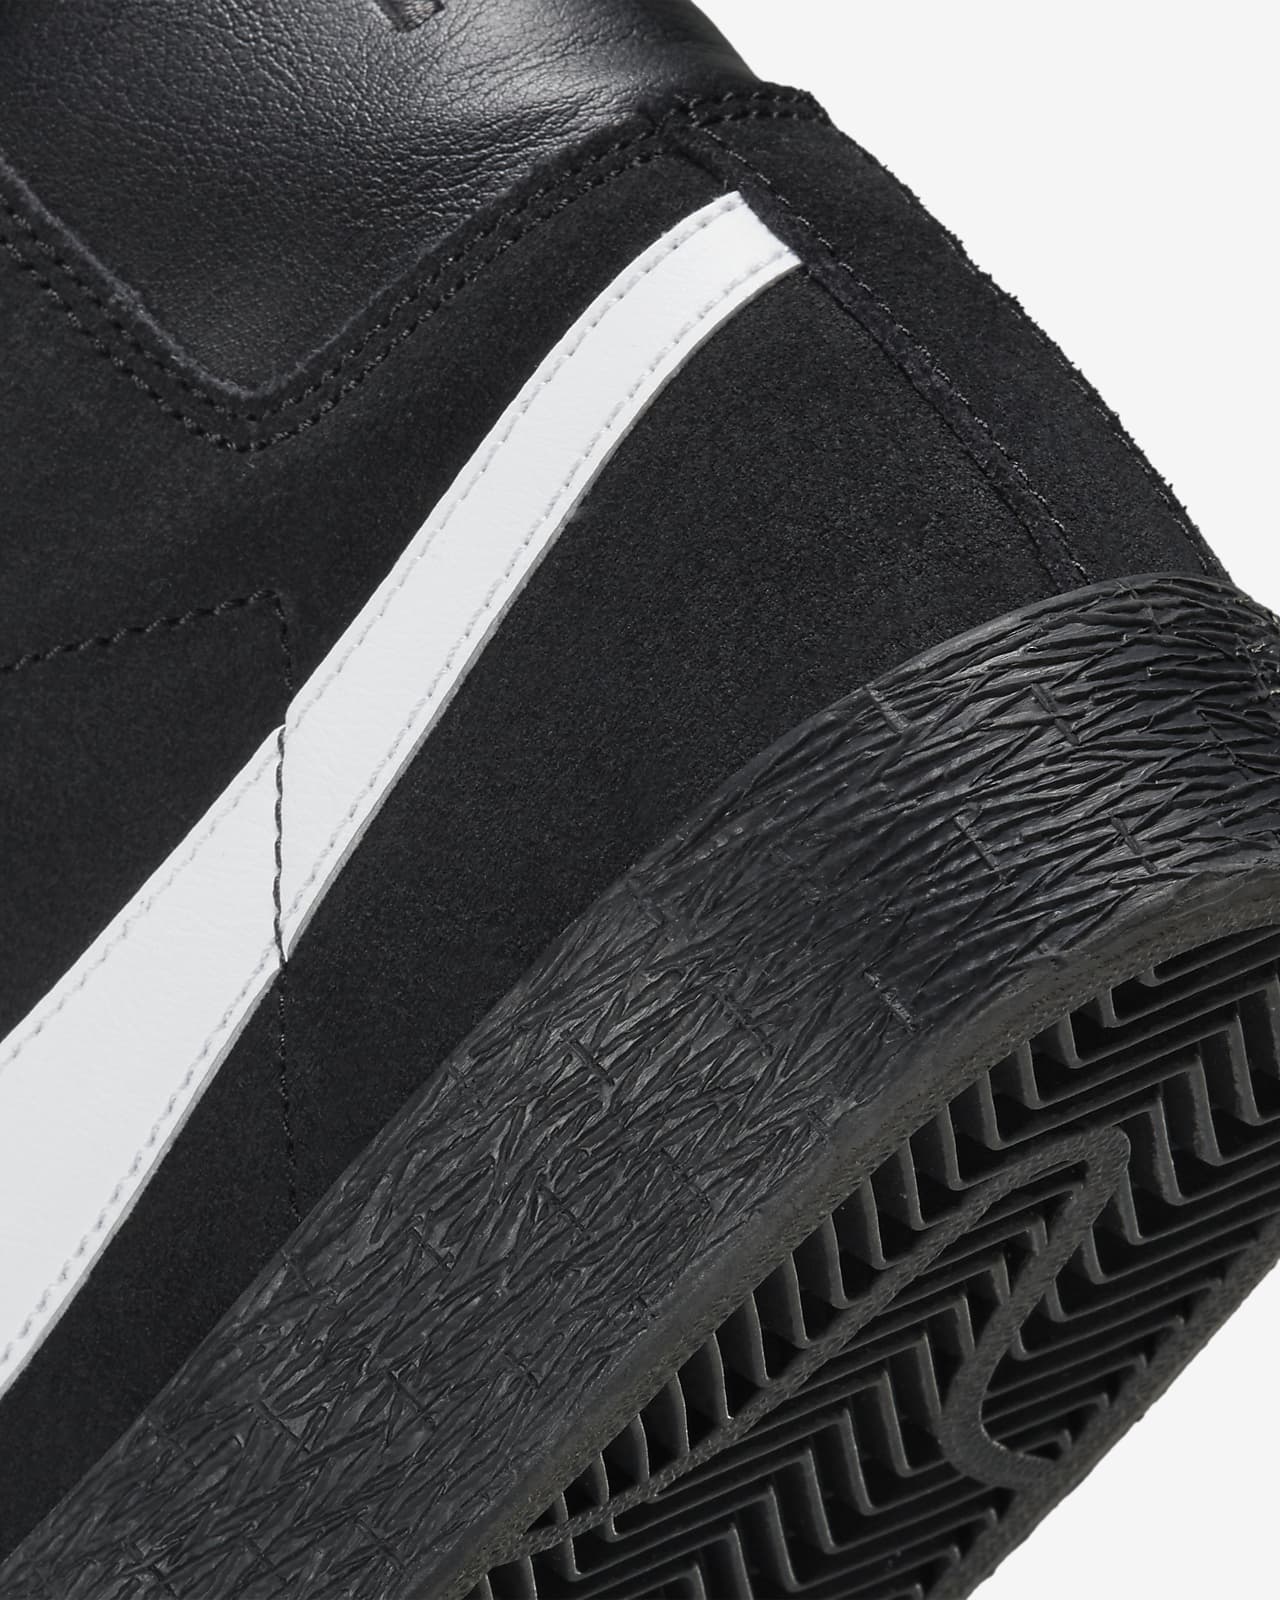 SB Zoom Blazer Zapatillas de Nike ES